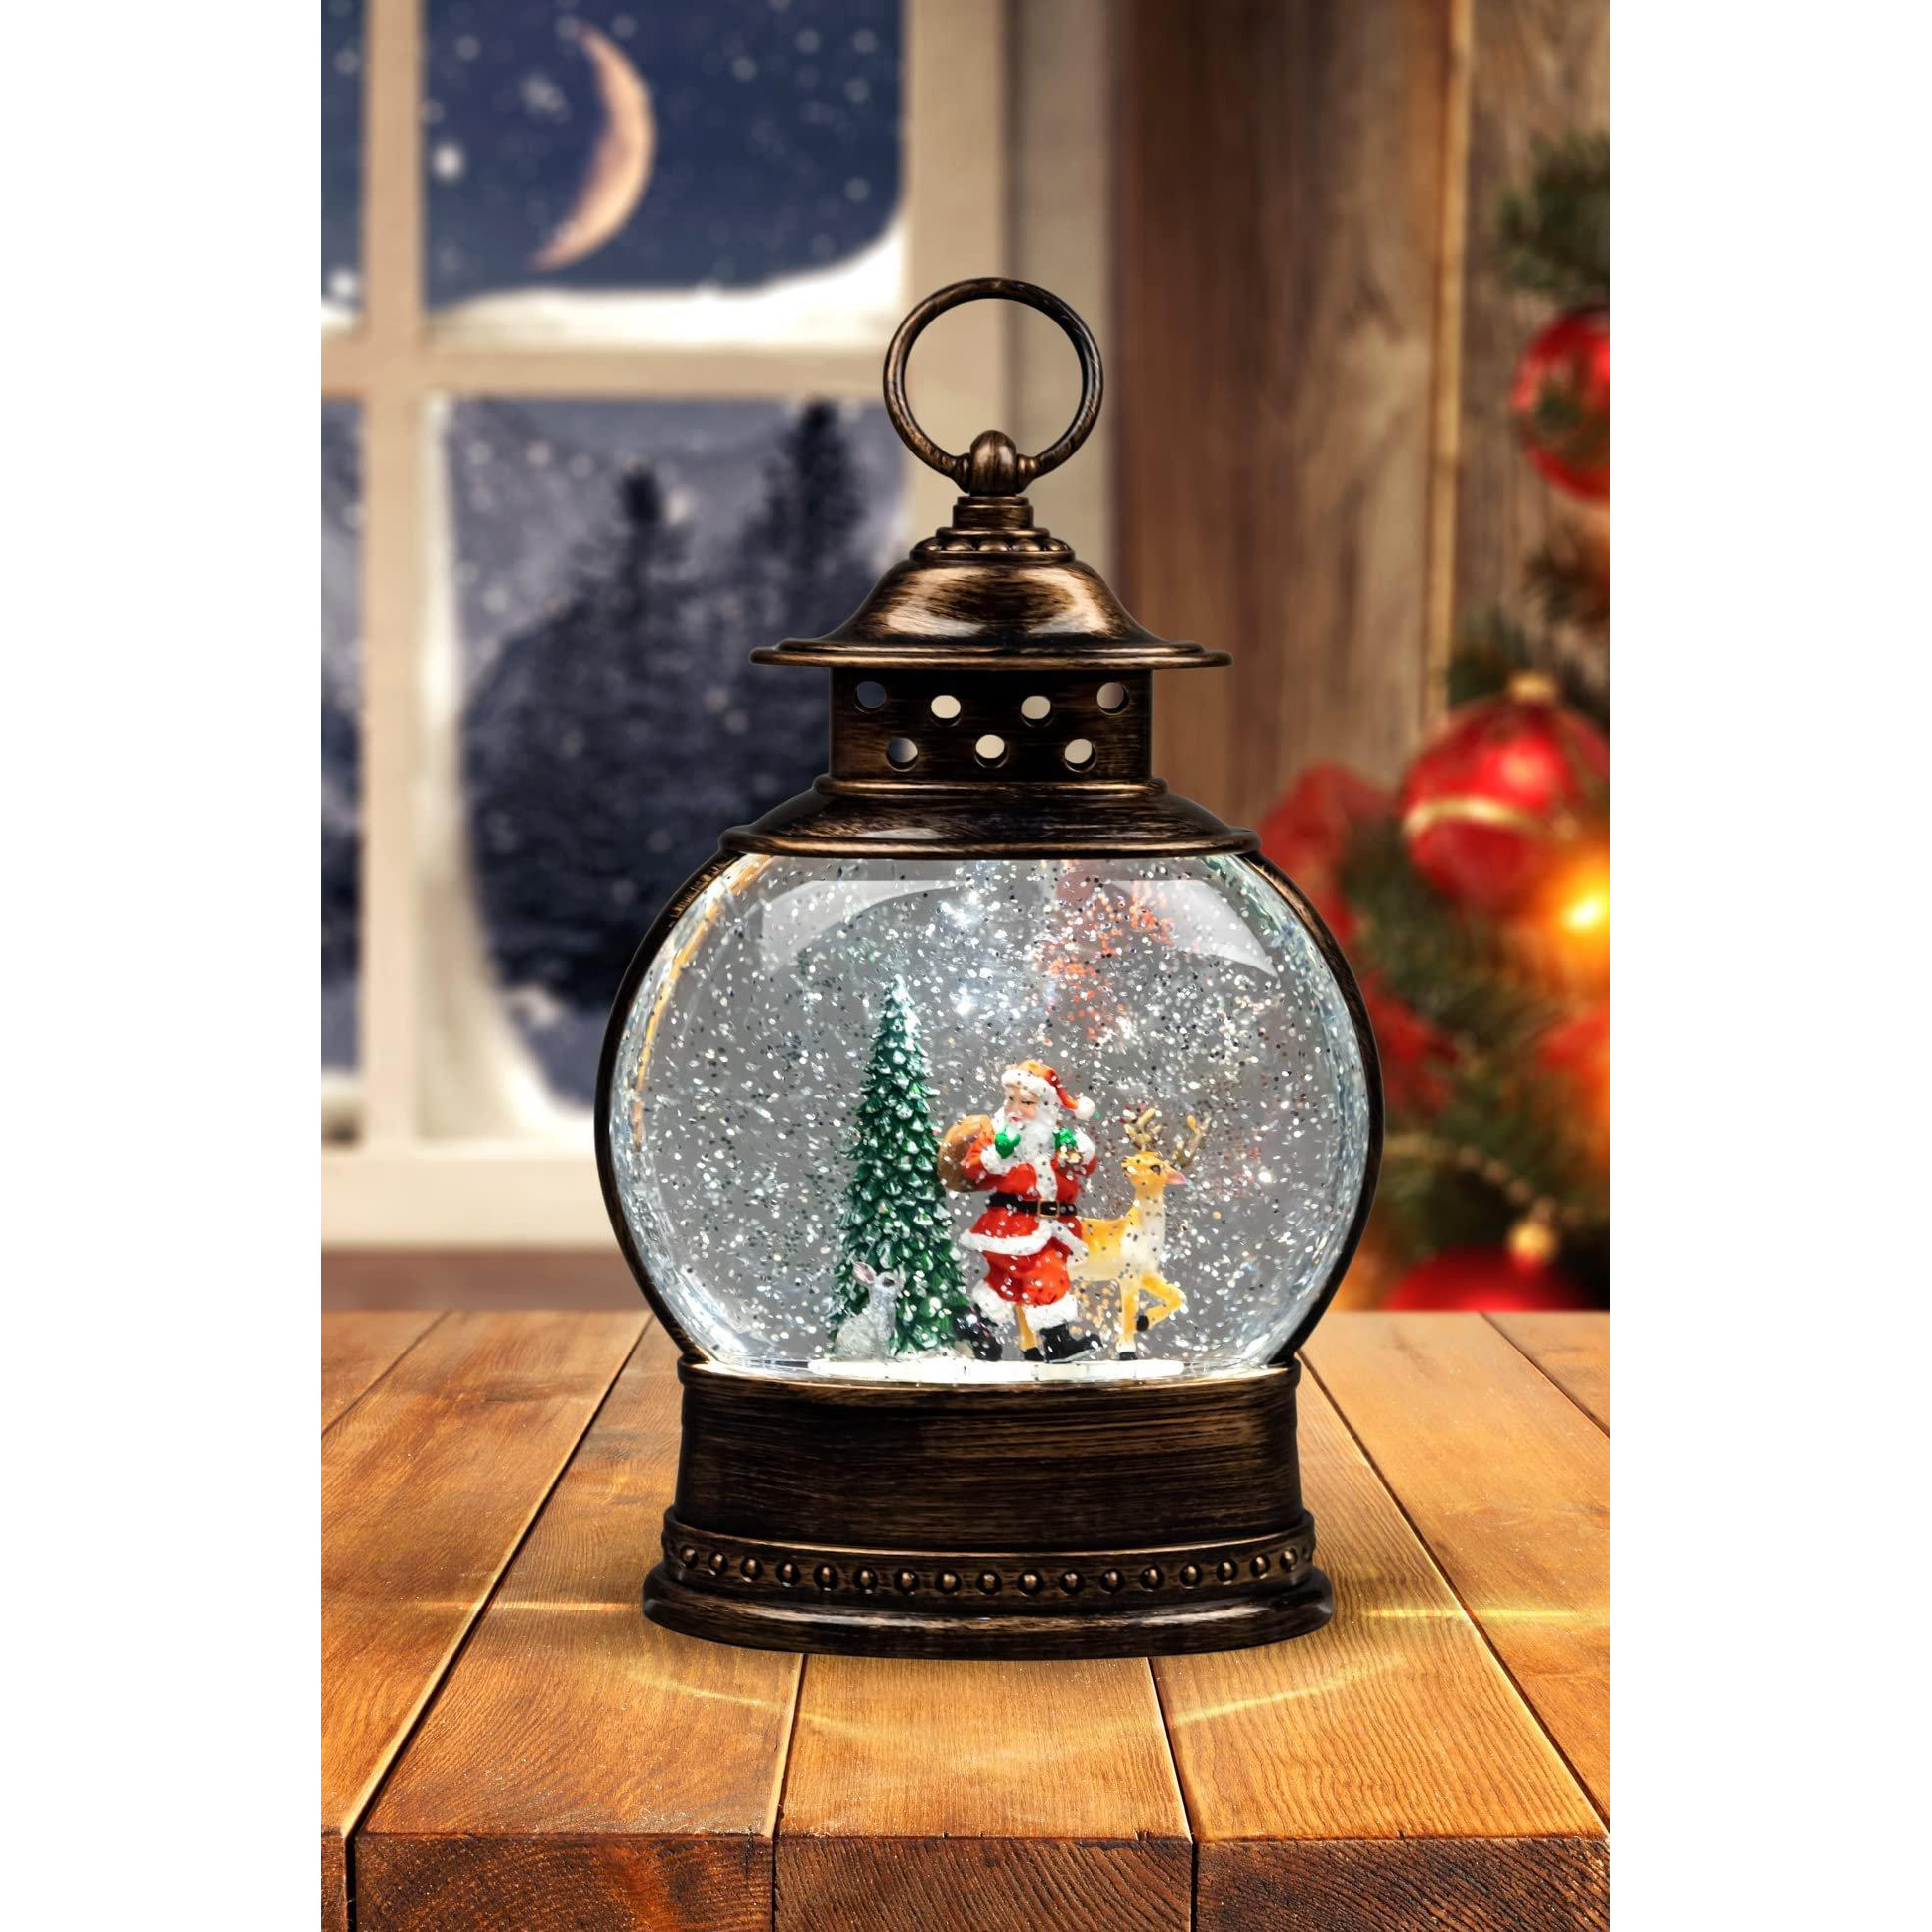 Christmas LED Lamp Lantern Indoor USB Battery Xmas Decorative Light, White - image 1